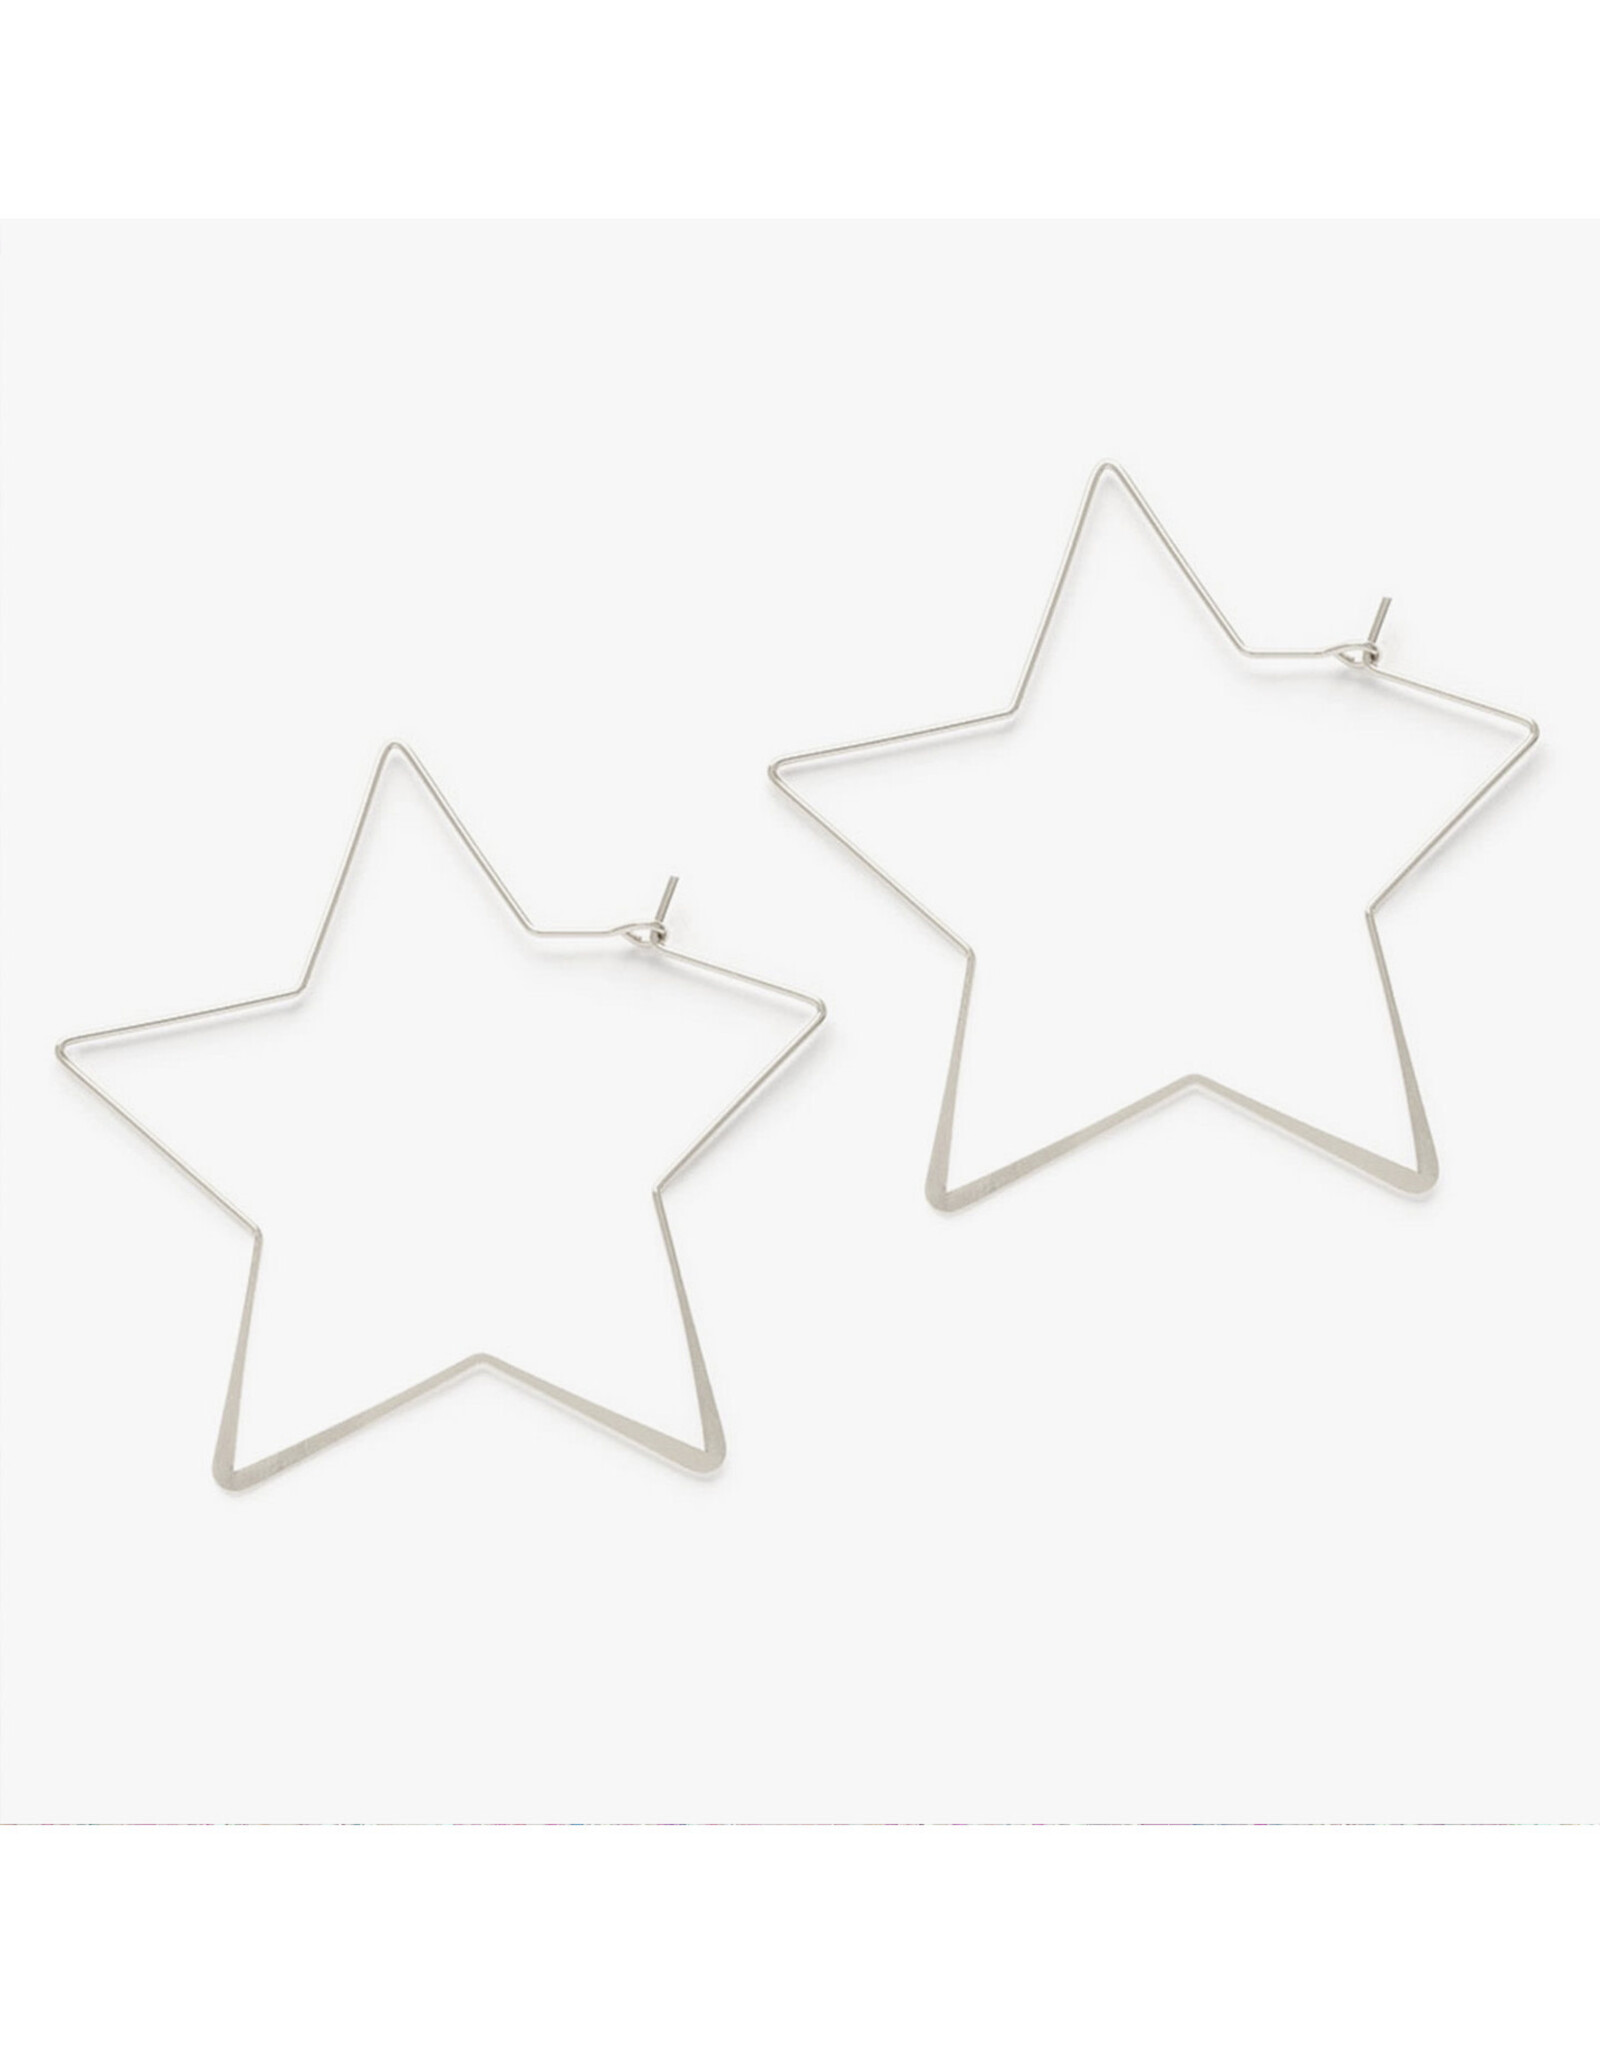 Giant Star Hoop Earrings- Silver